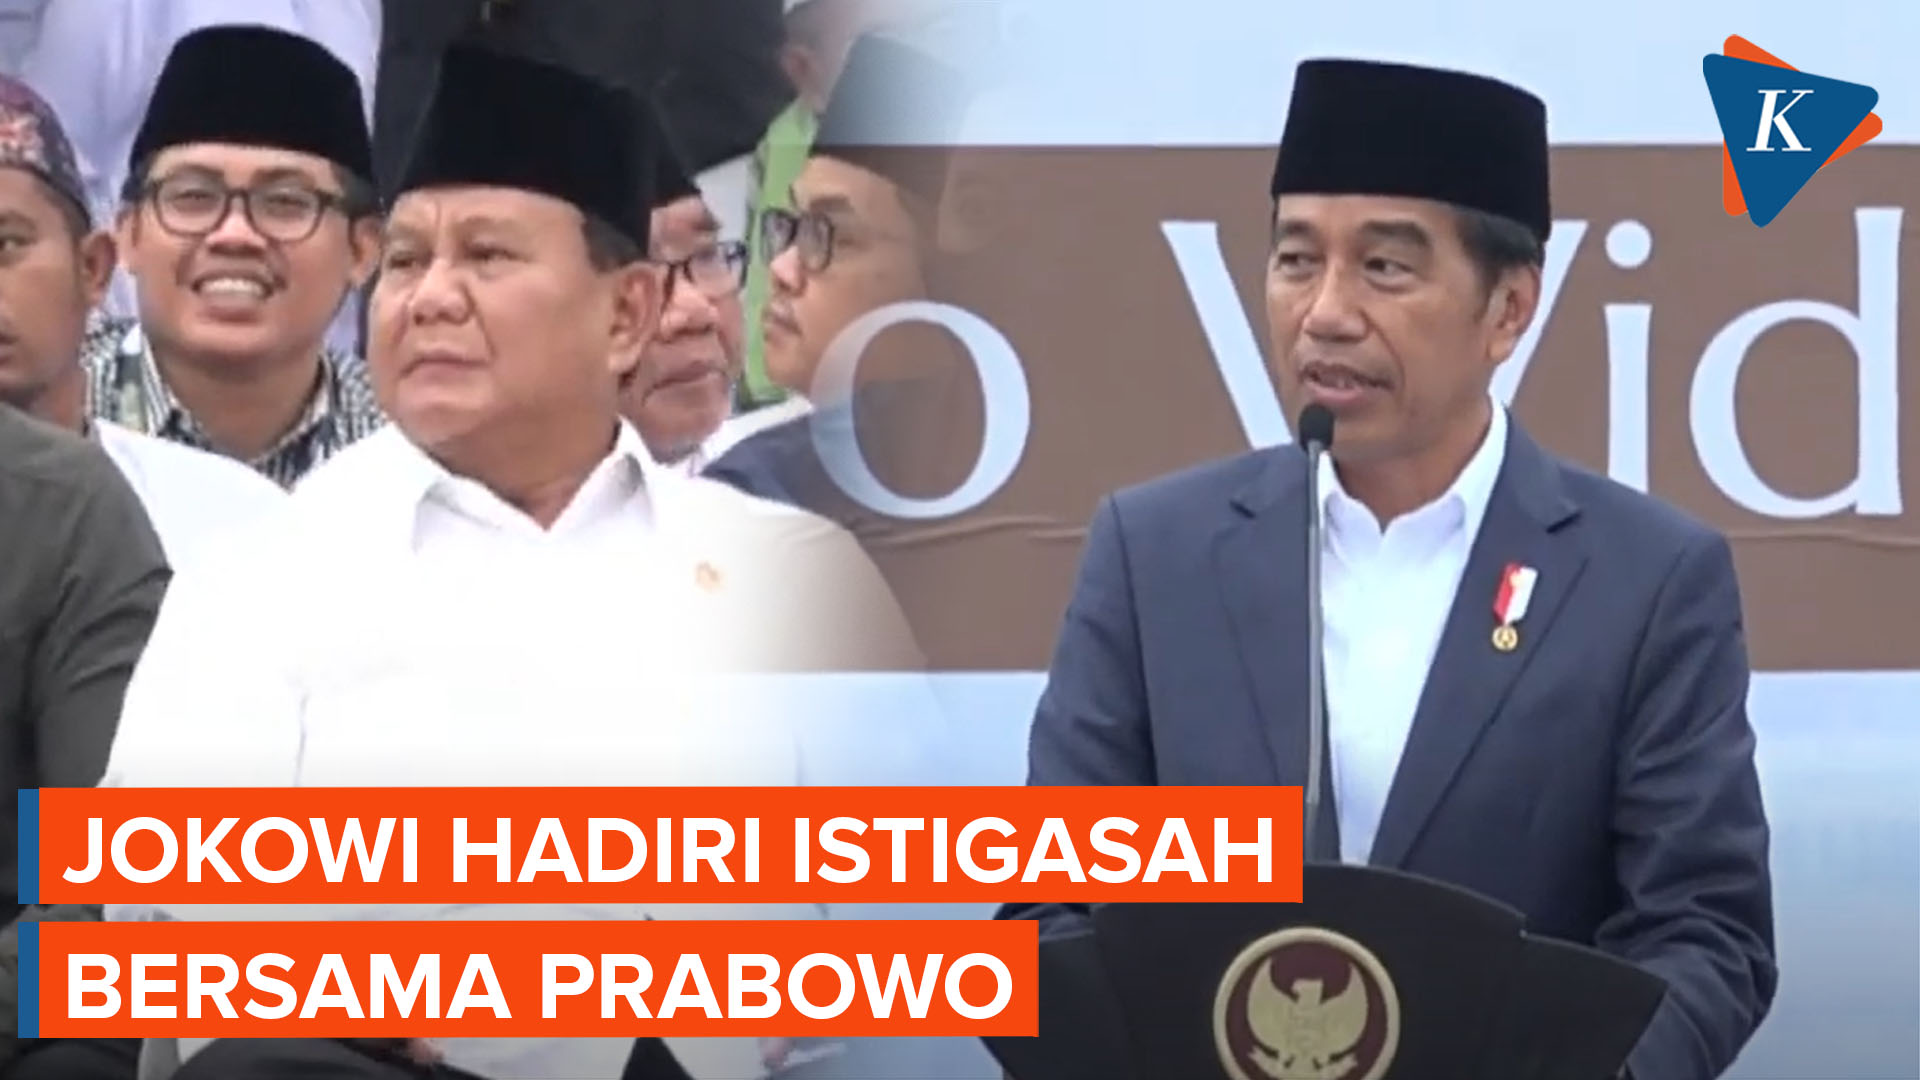 Prabowo Hadiri Istigasah Bersama Jokowi di Kalsel